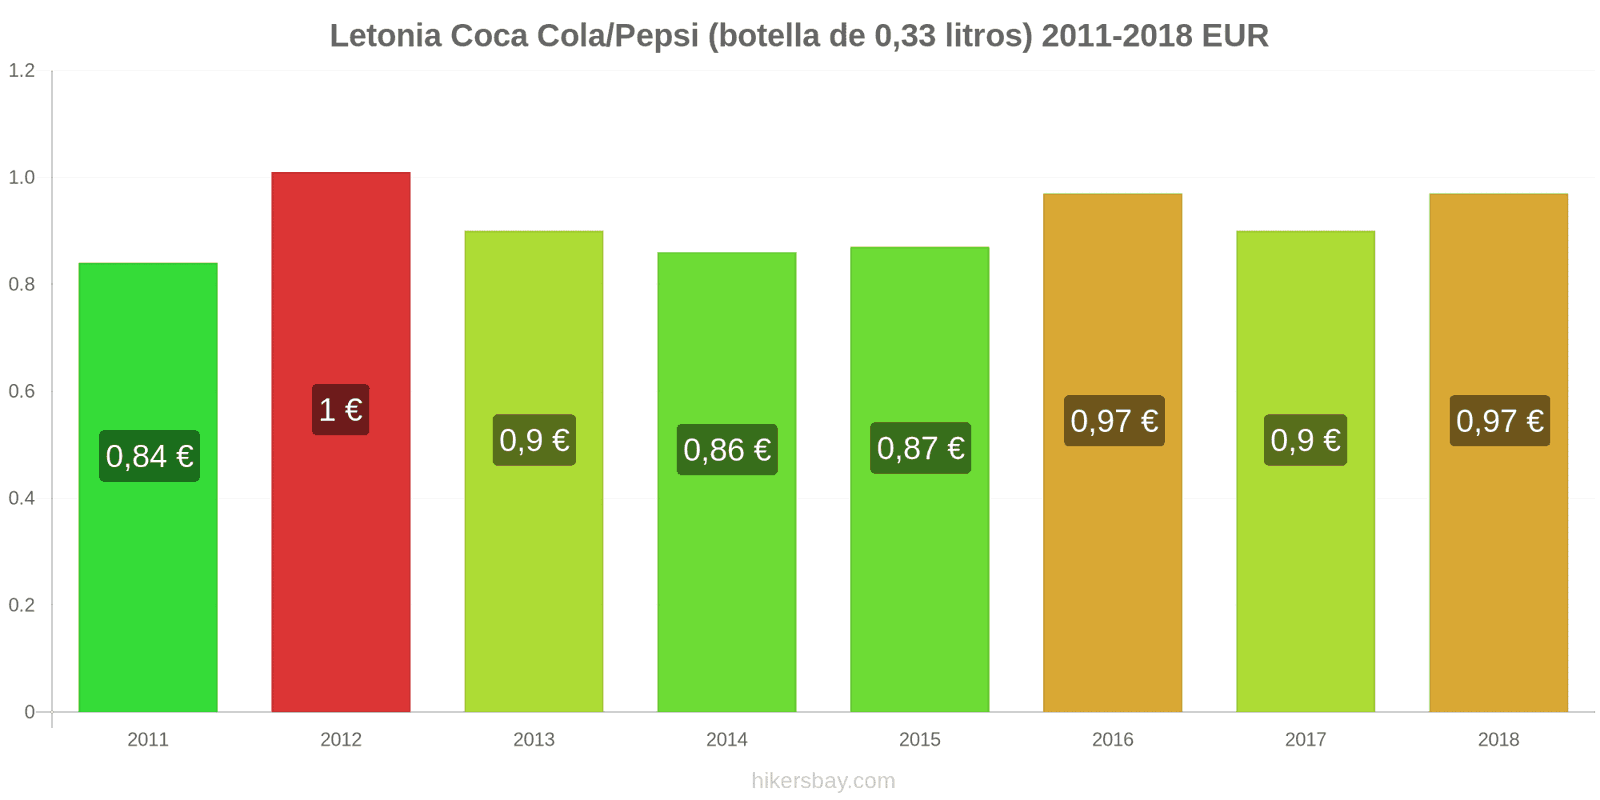 Letonia cambios de precios Coca-Cola/Pepsi (botella de 0.33 litros) hikersbay.com